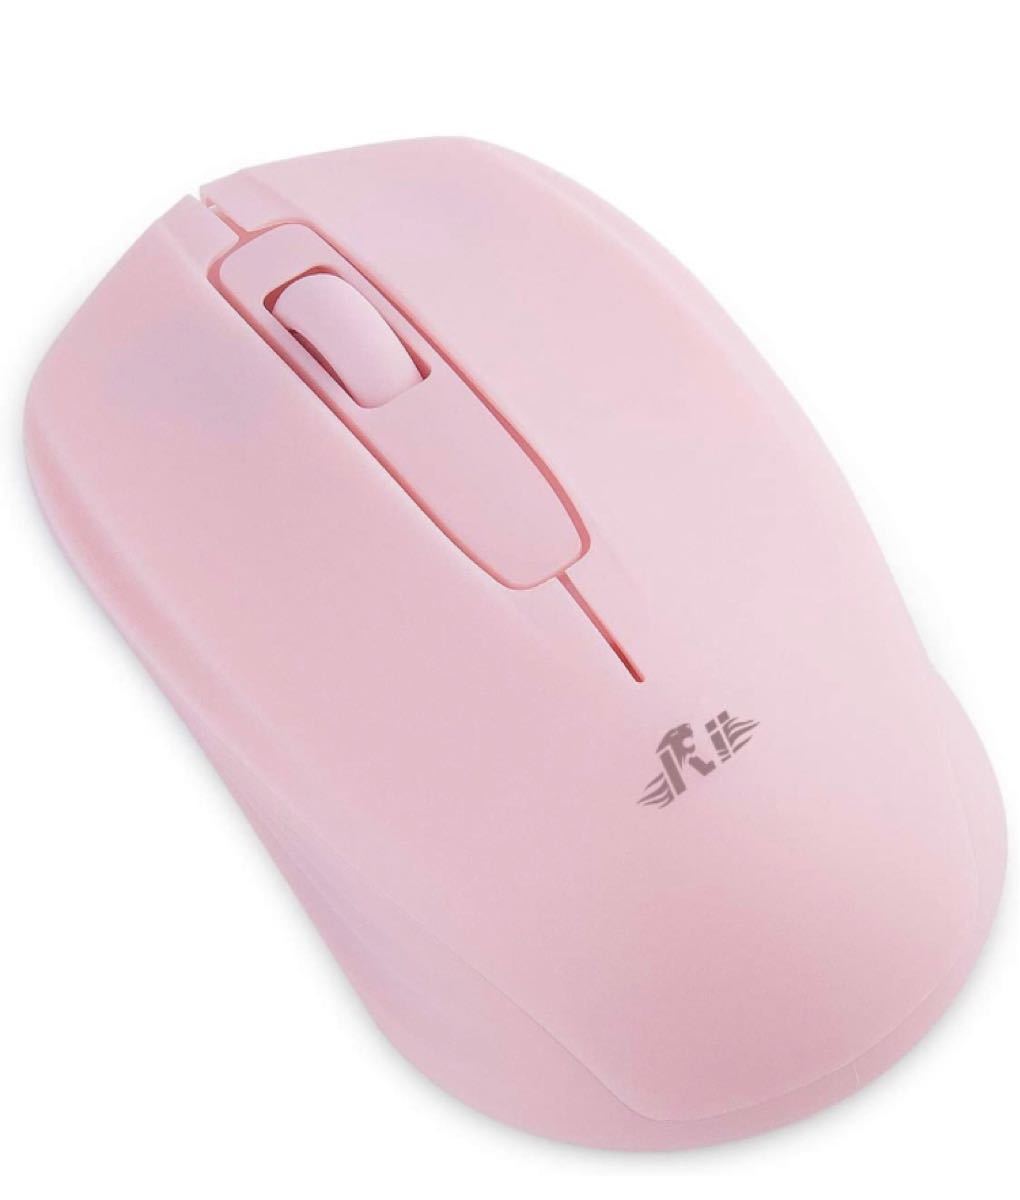 マウスワイヤレス 小型 無線マウス 電池式 2.4GHz 1000DPI 付属ワイヤレスマウス USBレシーバ PC用マウス 